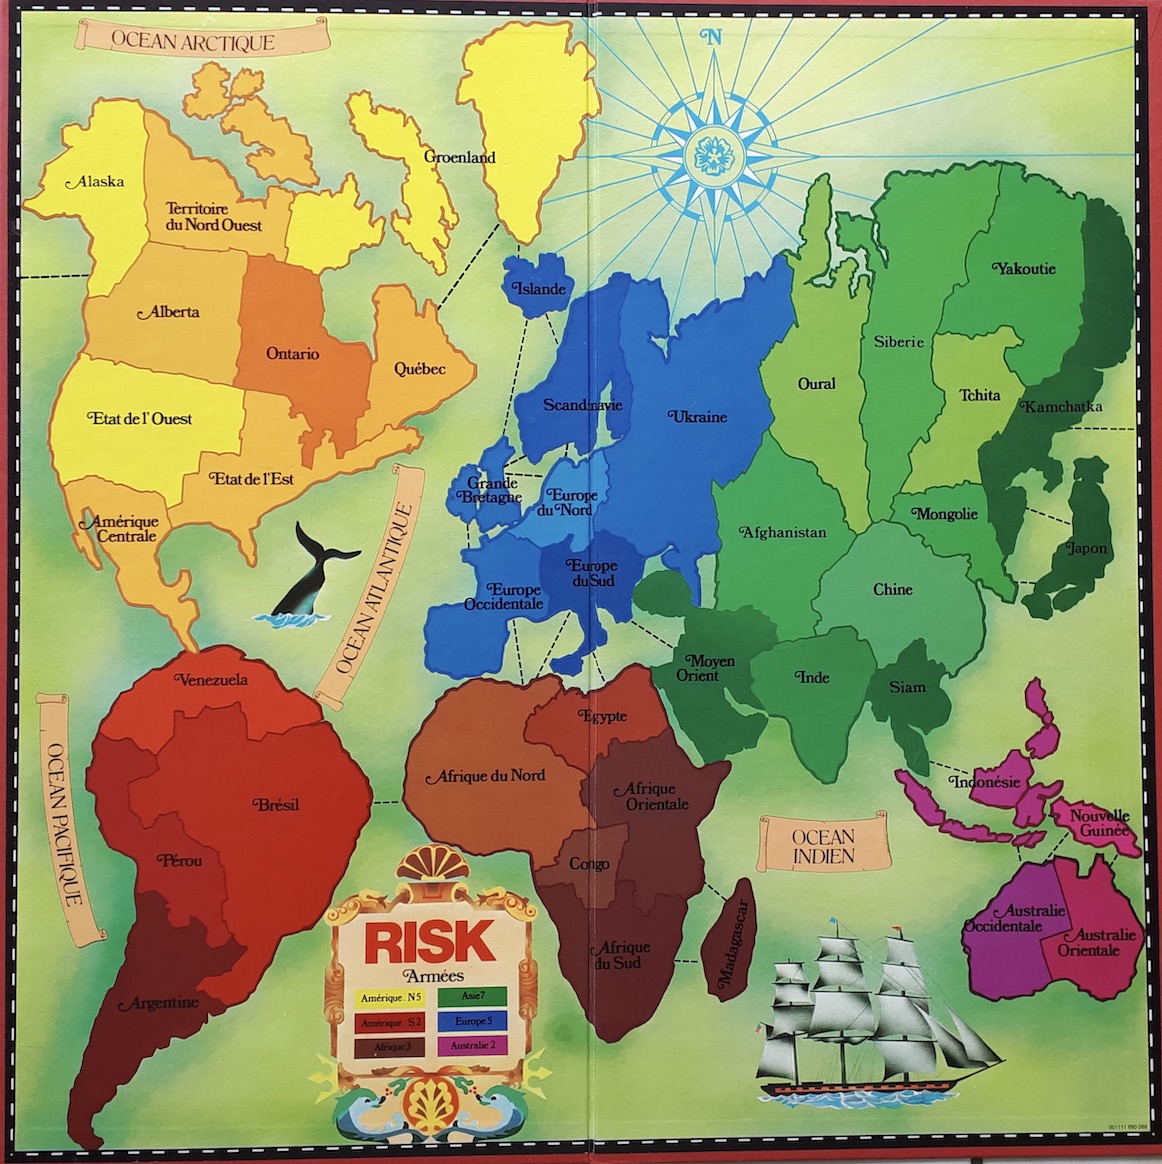 Risk - Jeux de société des 30 glorieuses